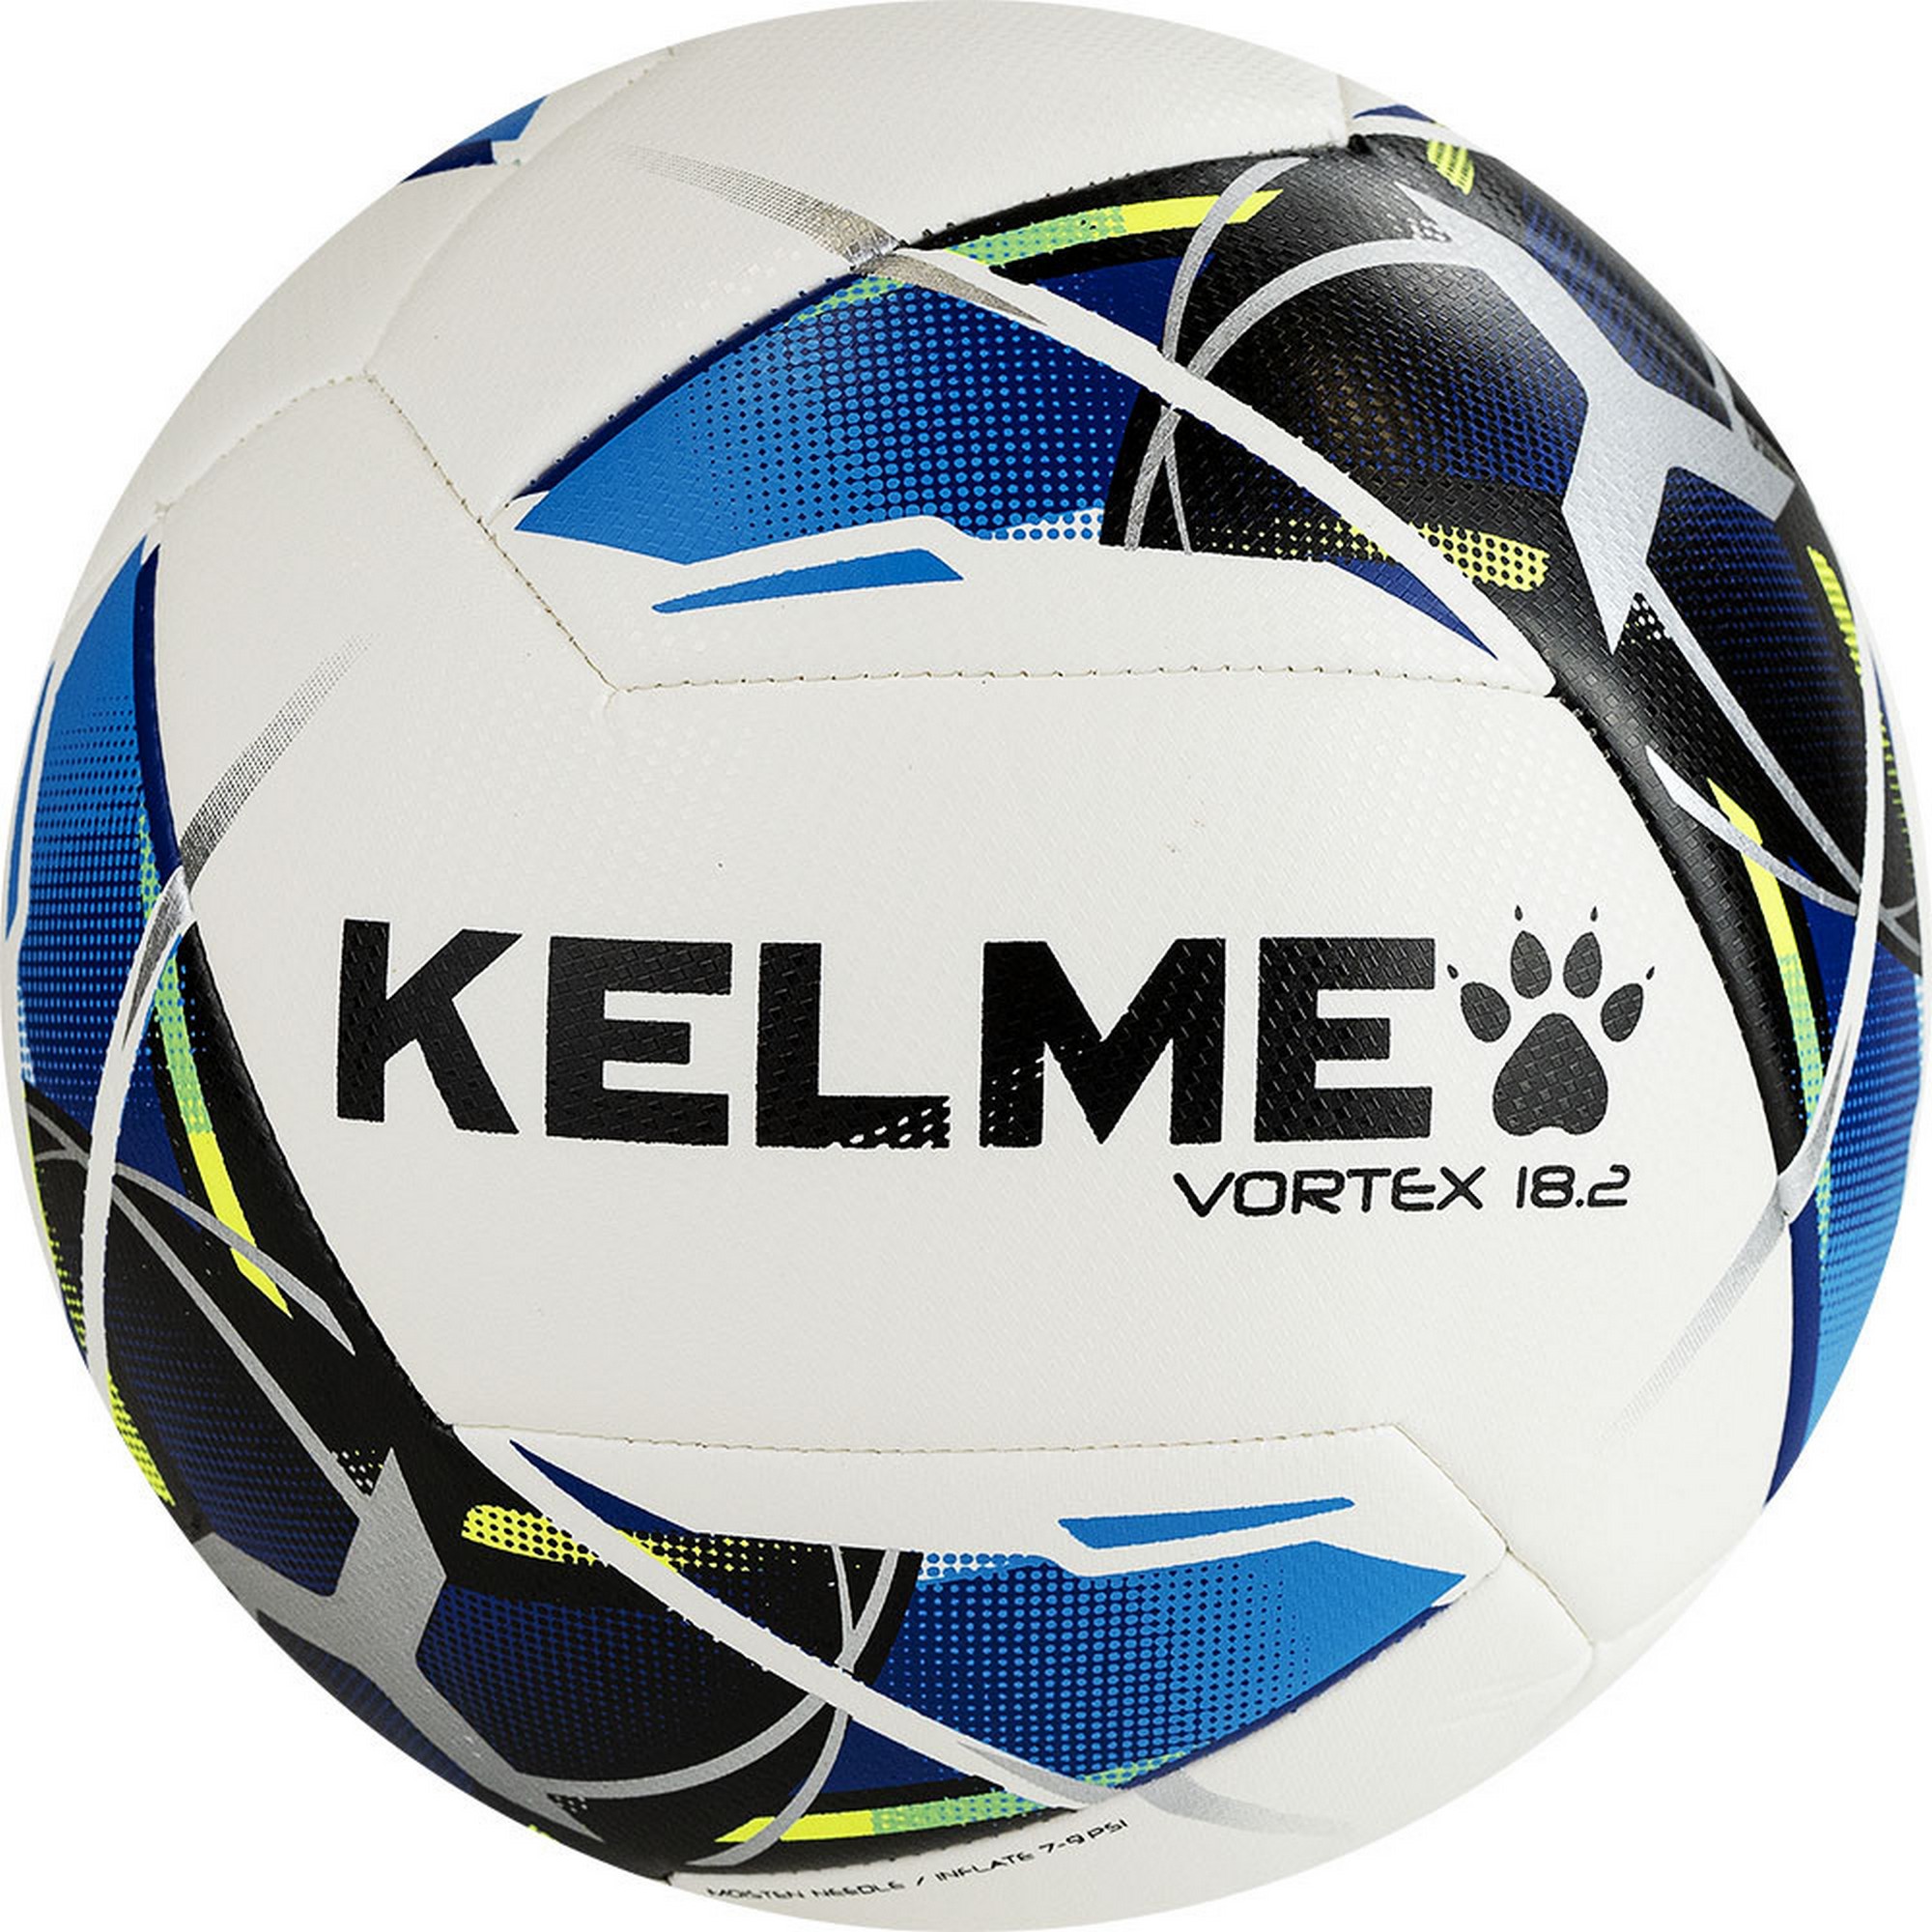 Мяч футбольный Kelme Vortex 18.2 9886120-113 р.5